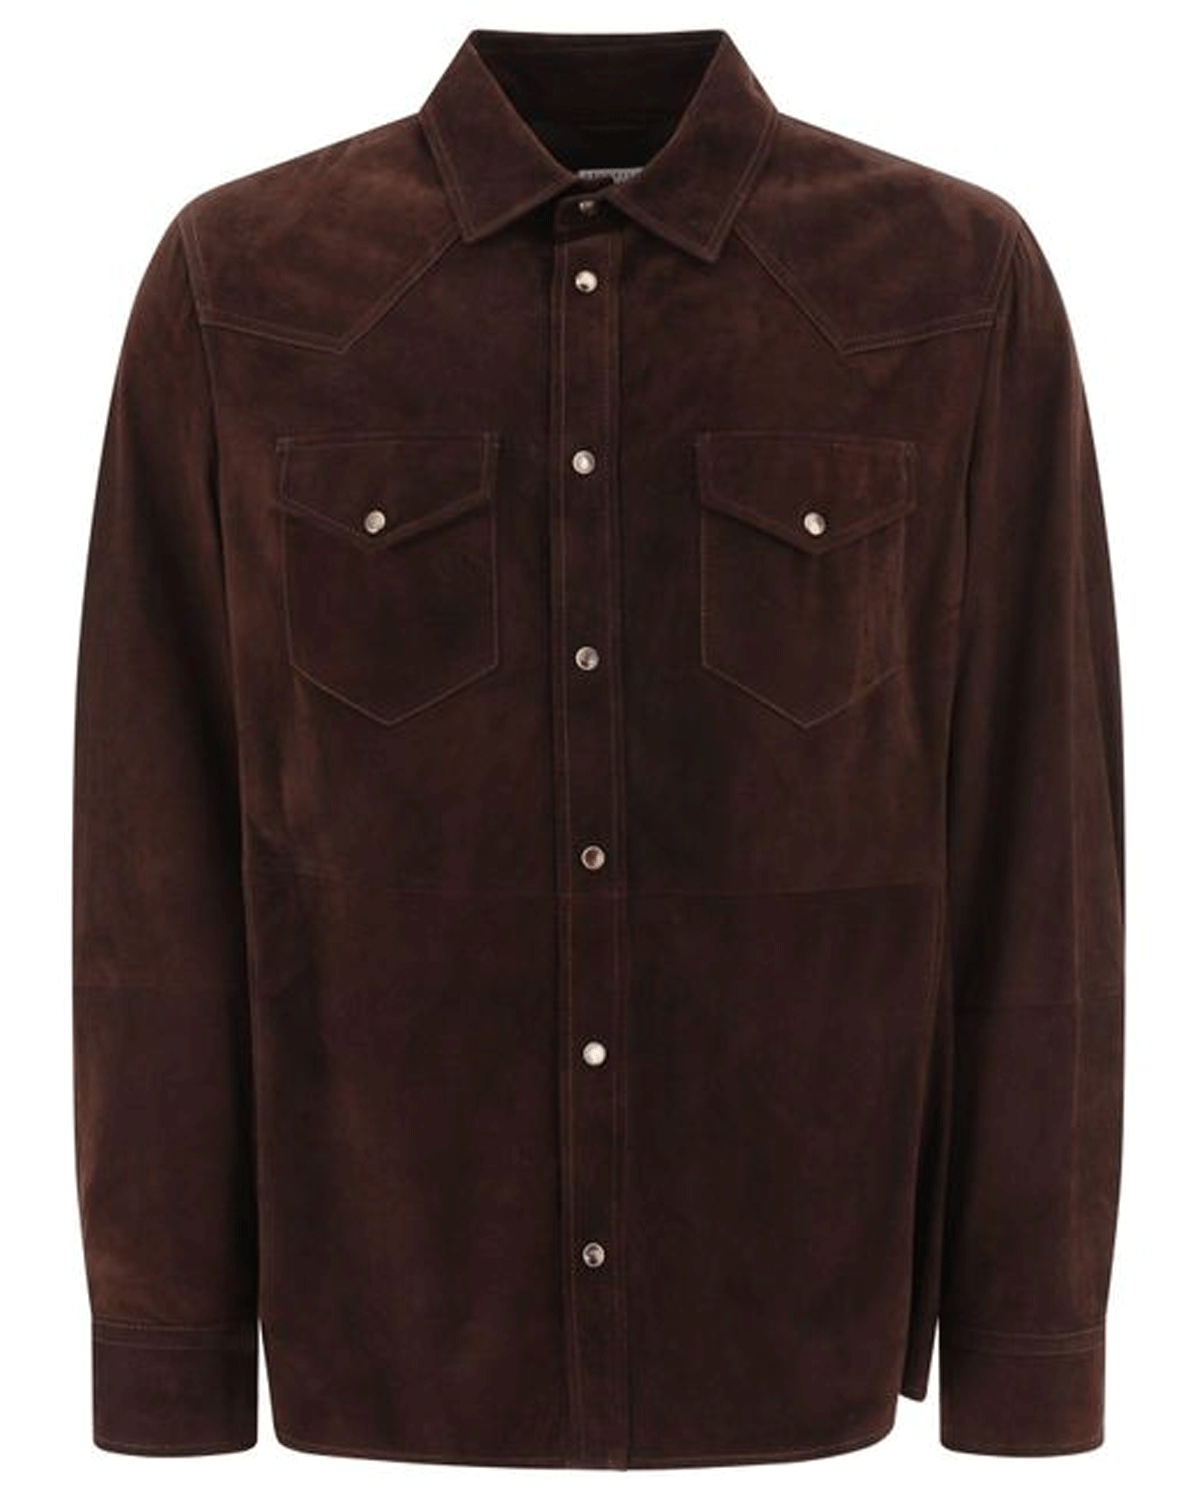 Dark Brown Suede Western Shirt